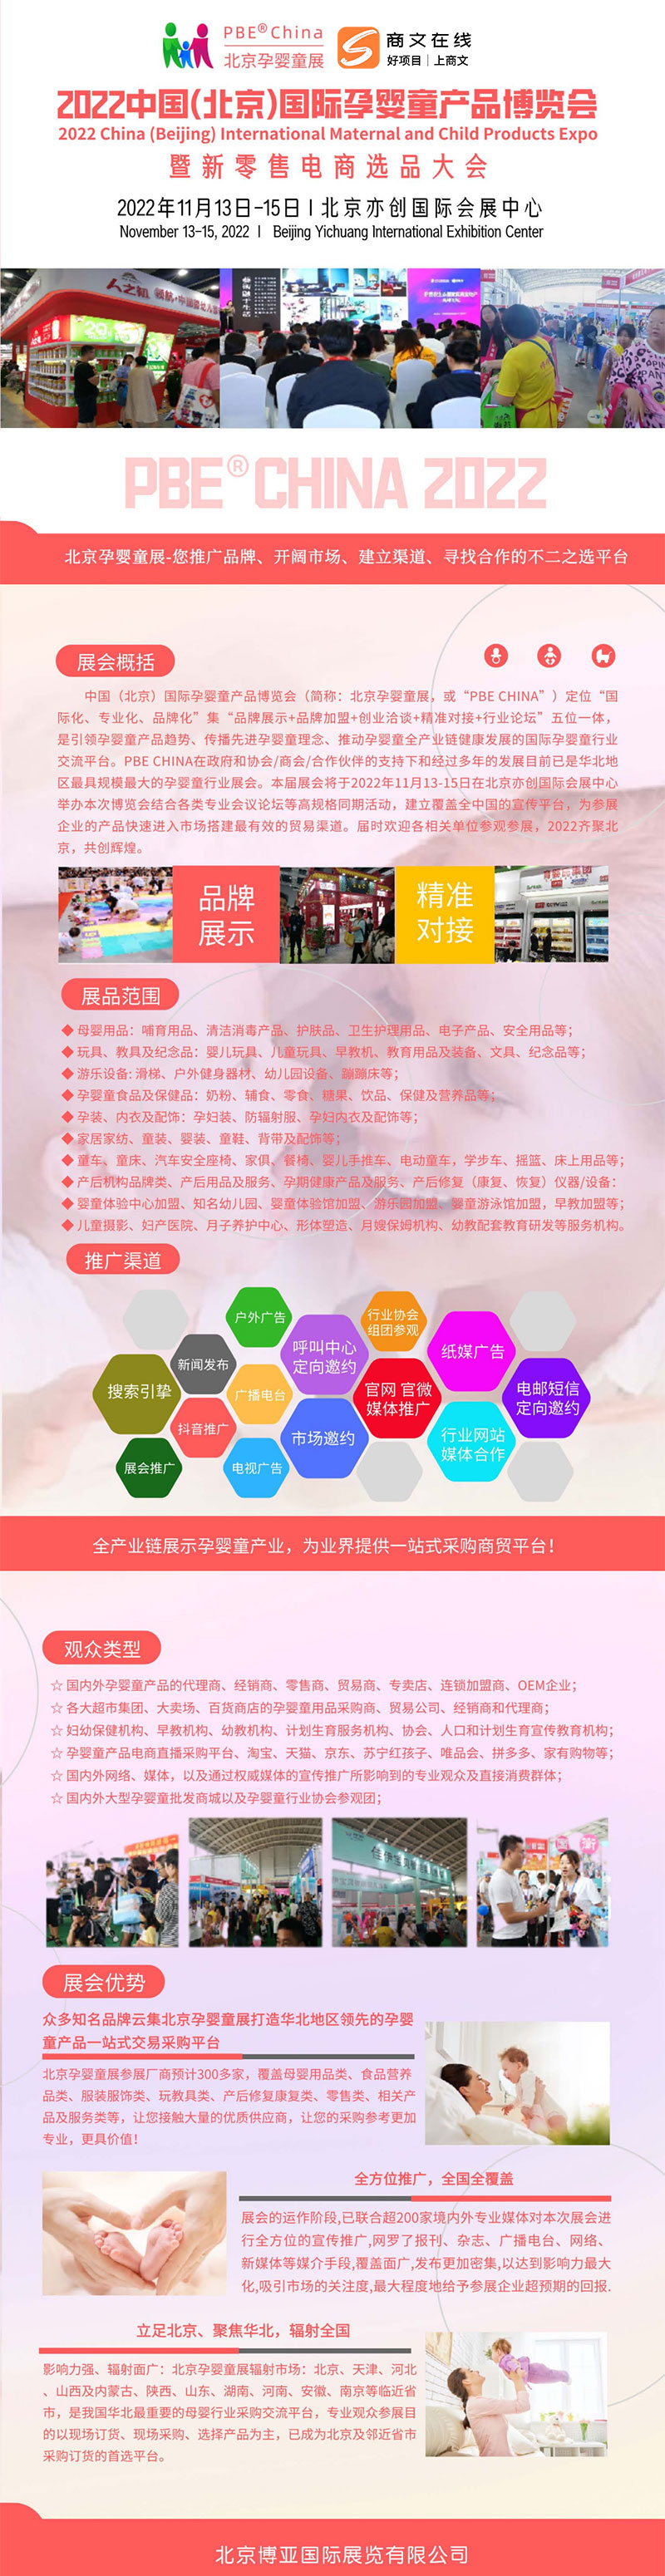 3.北京孕婴展.jpg